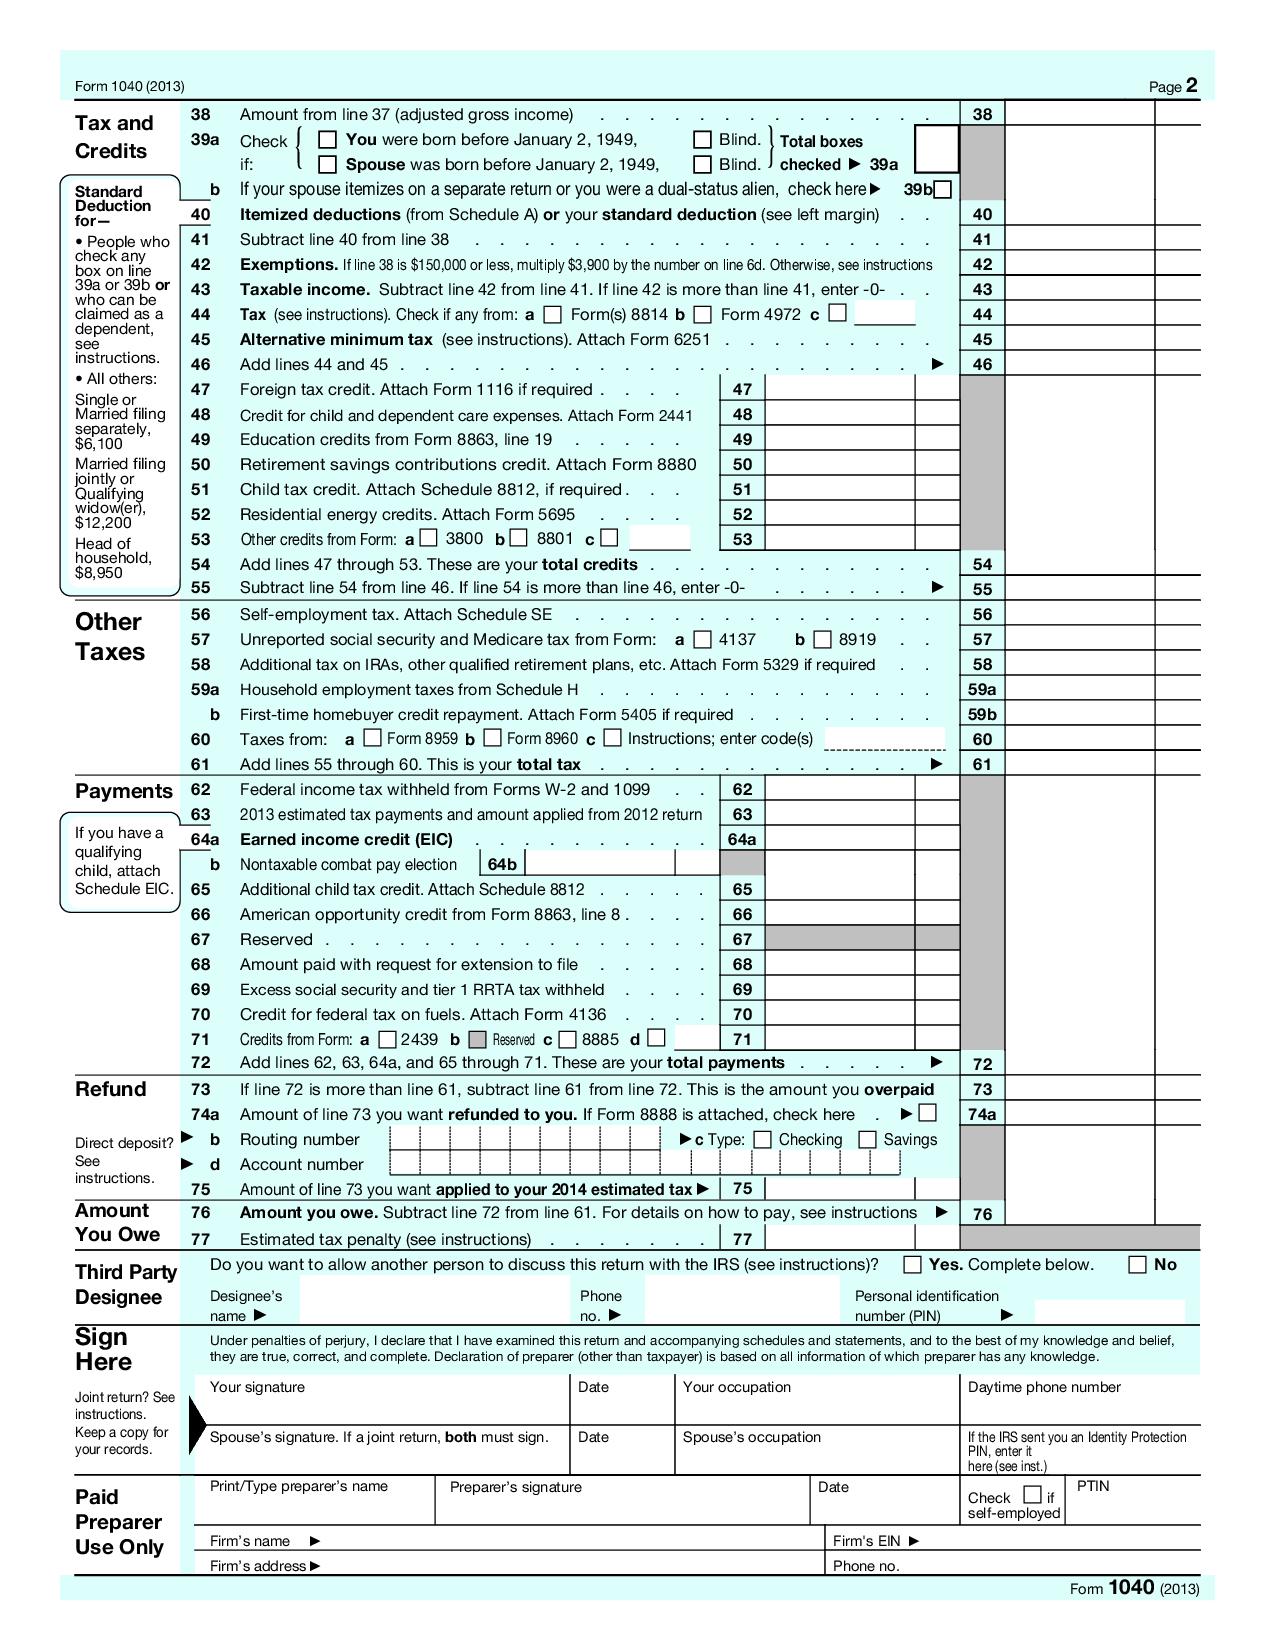 1040-u-s-individual-income-tax-return-with-schedule-e